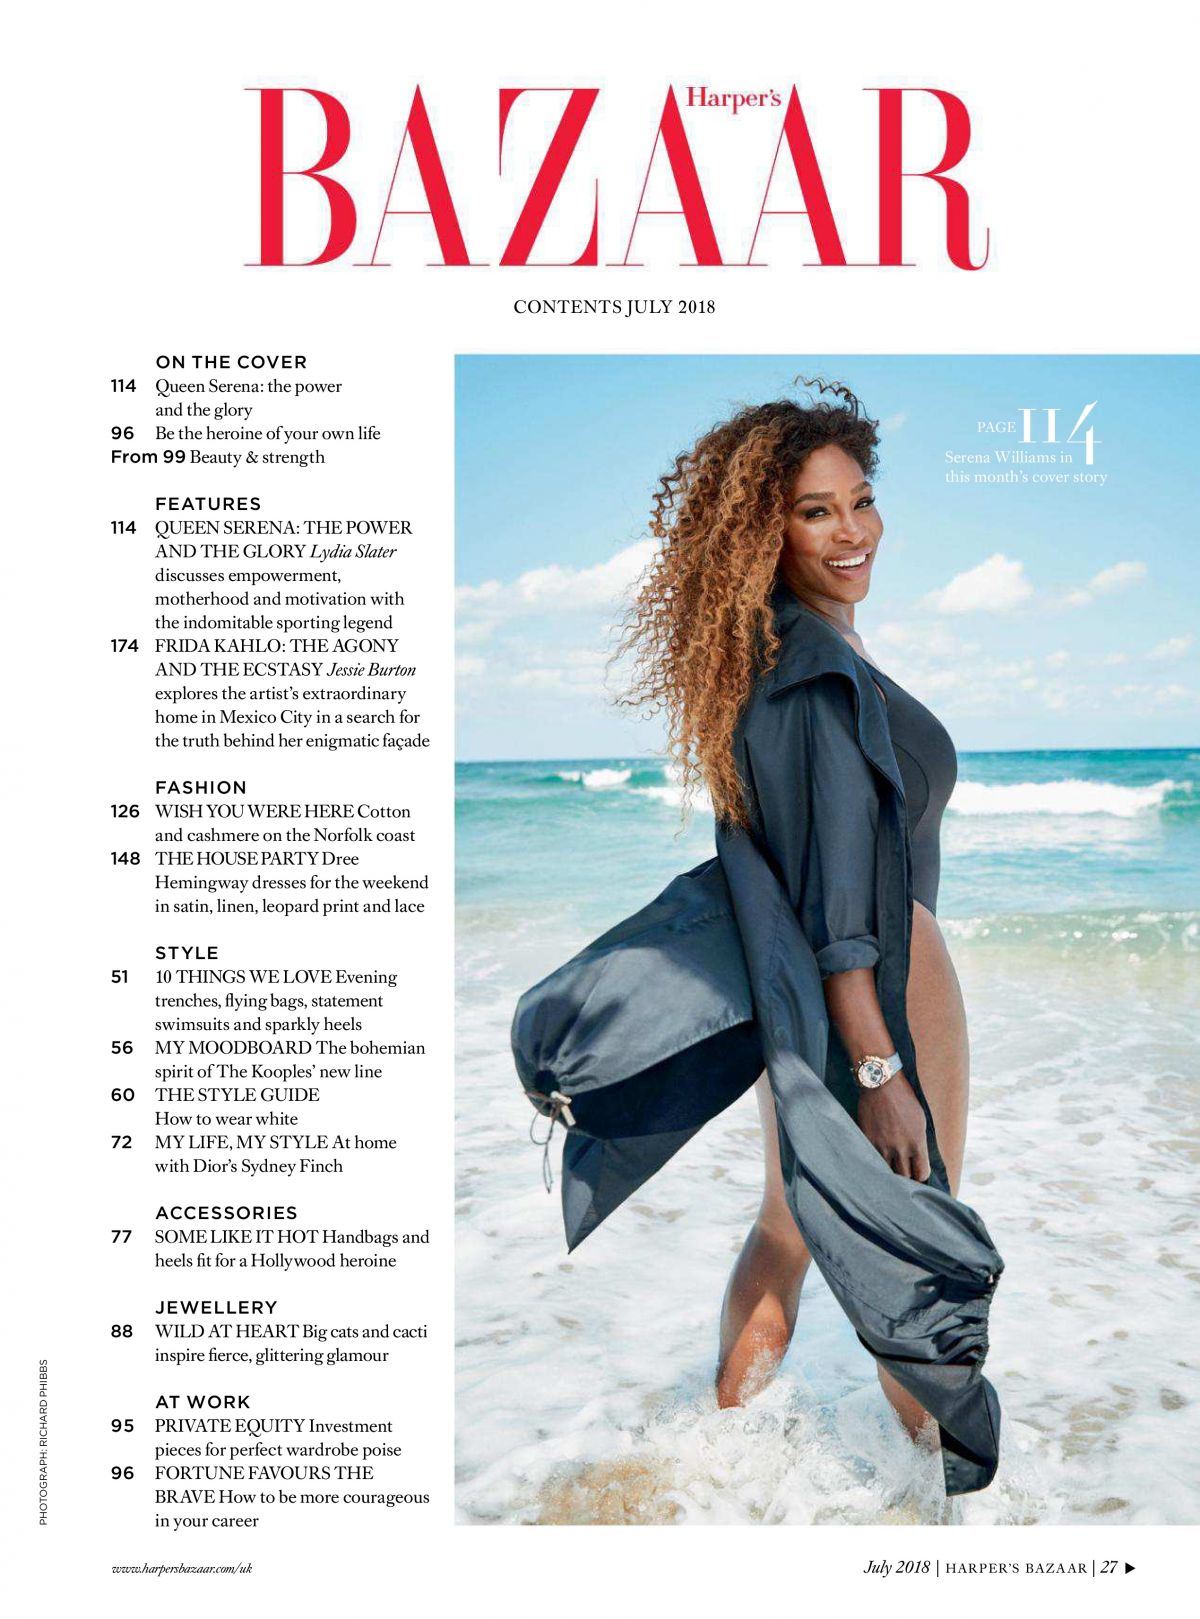 Serena Williams in Harper’s Bazaar, UK July 2018